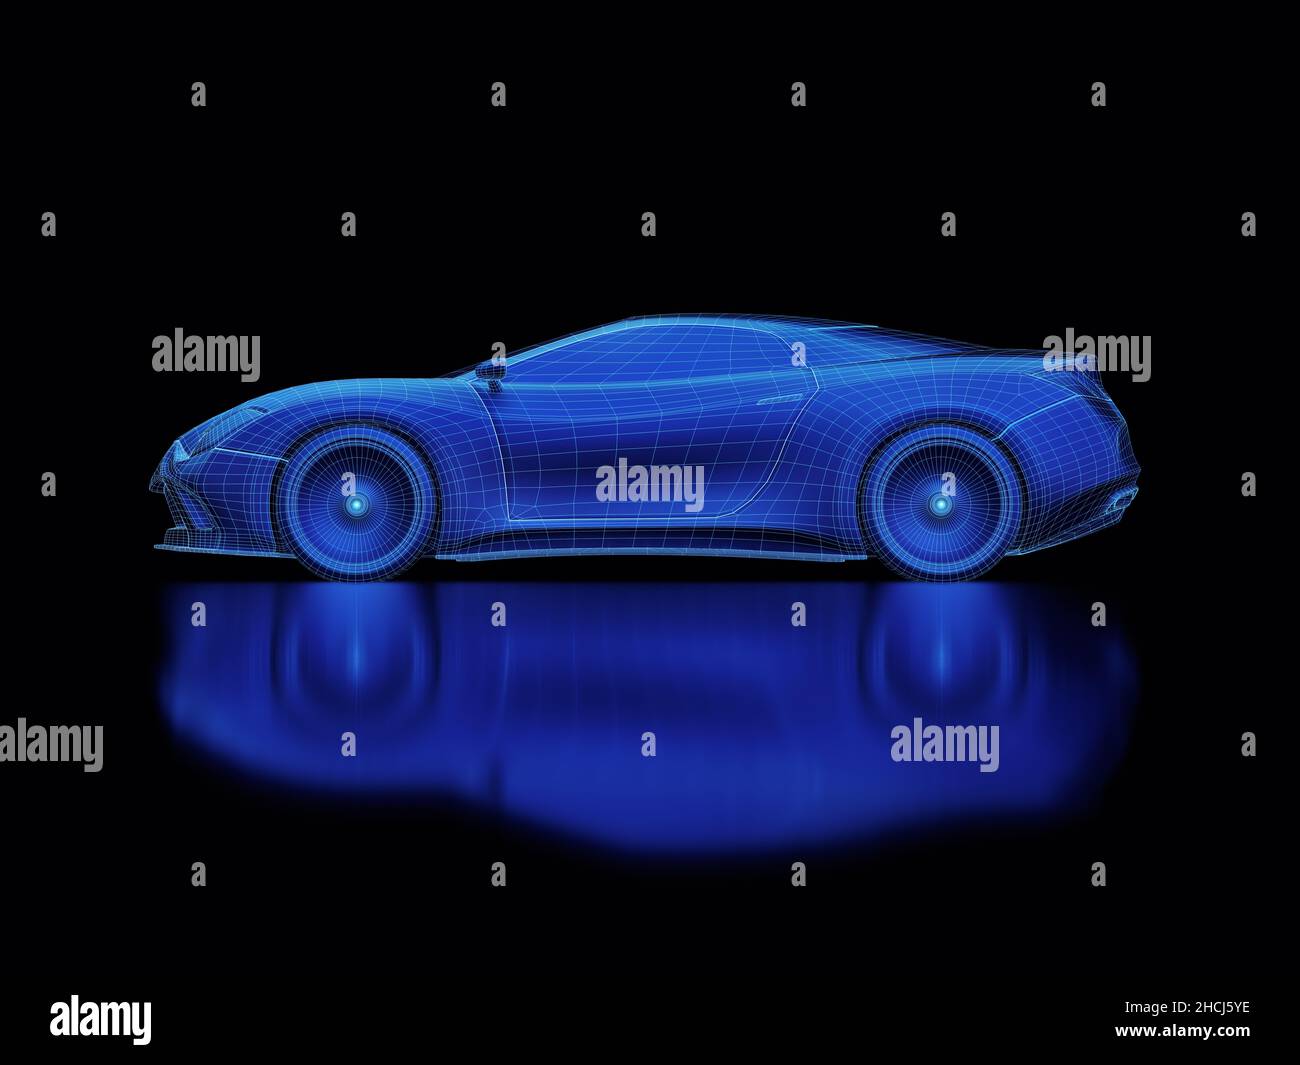 Sportwagen Blaupause Konzept in 3D Software gemacht. Konzeptbild von Prototypen- und aerodynamischen Tests. Beschneidungspfad enthalten. Stockfoto